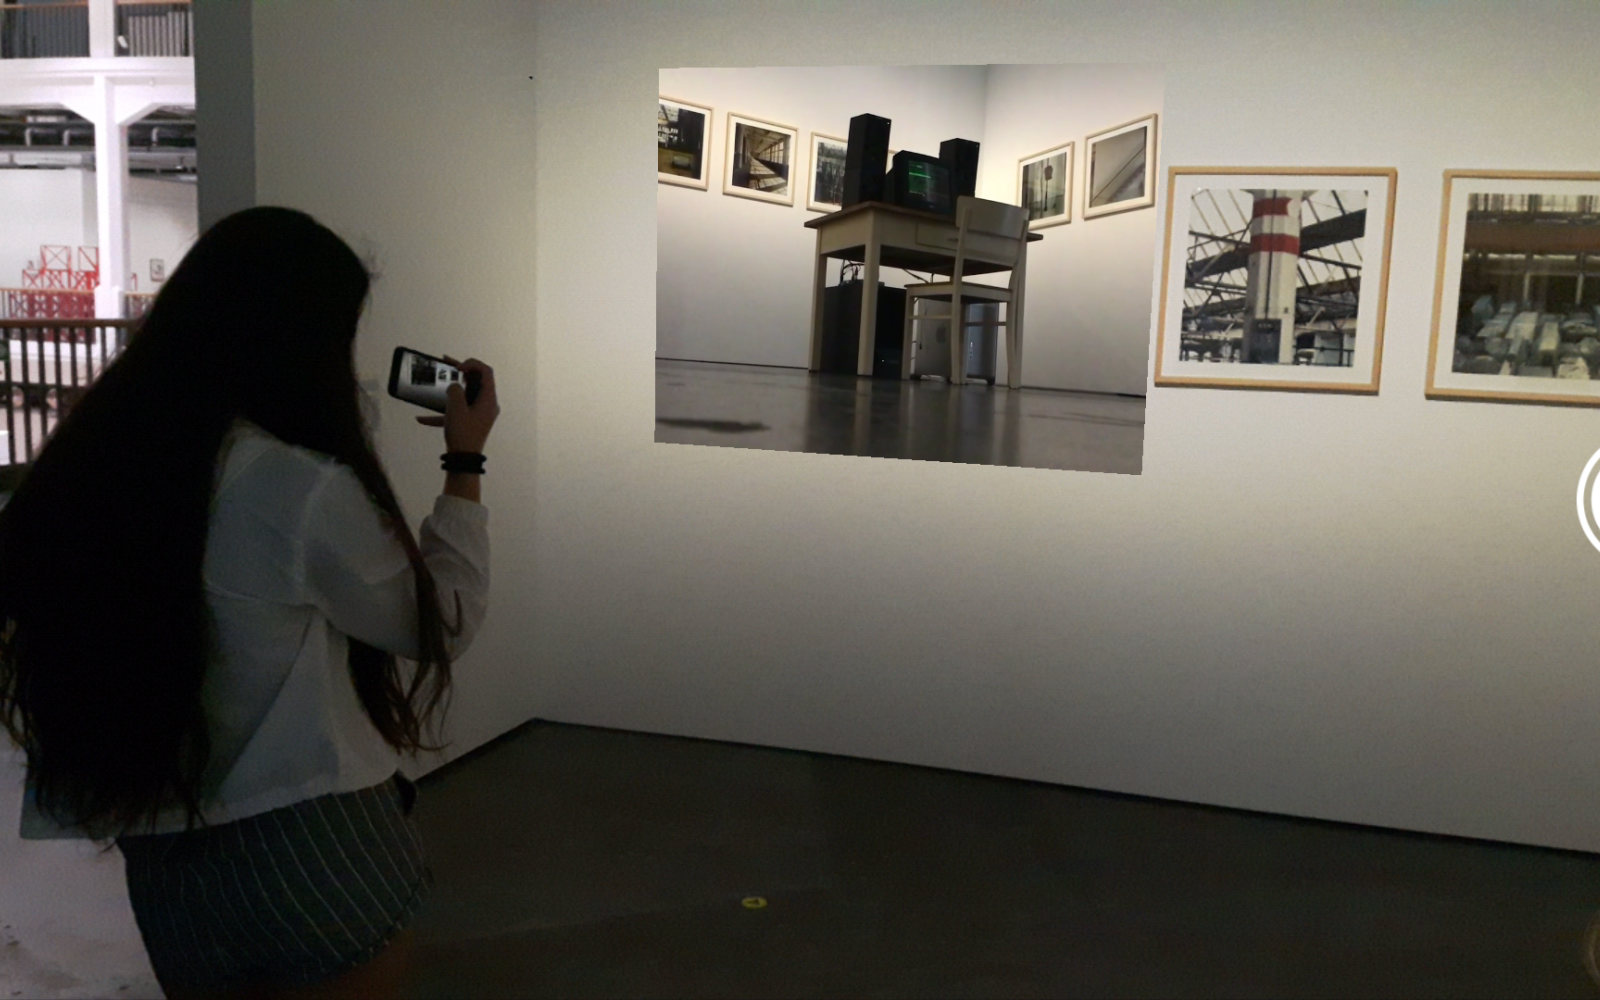 Ein Mädchen steht mit ihrem Handy in der Hand vor einem Bild. Sie hält ihr Handy so als würde sie das Bild filmen.